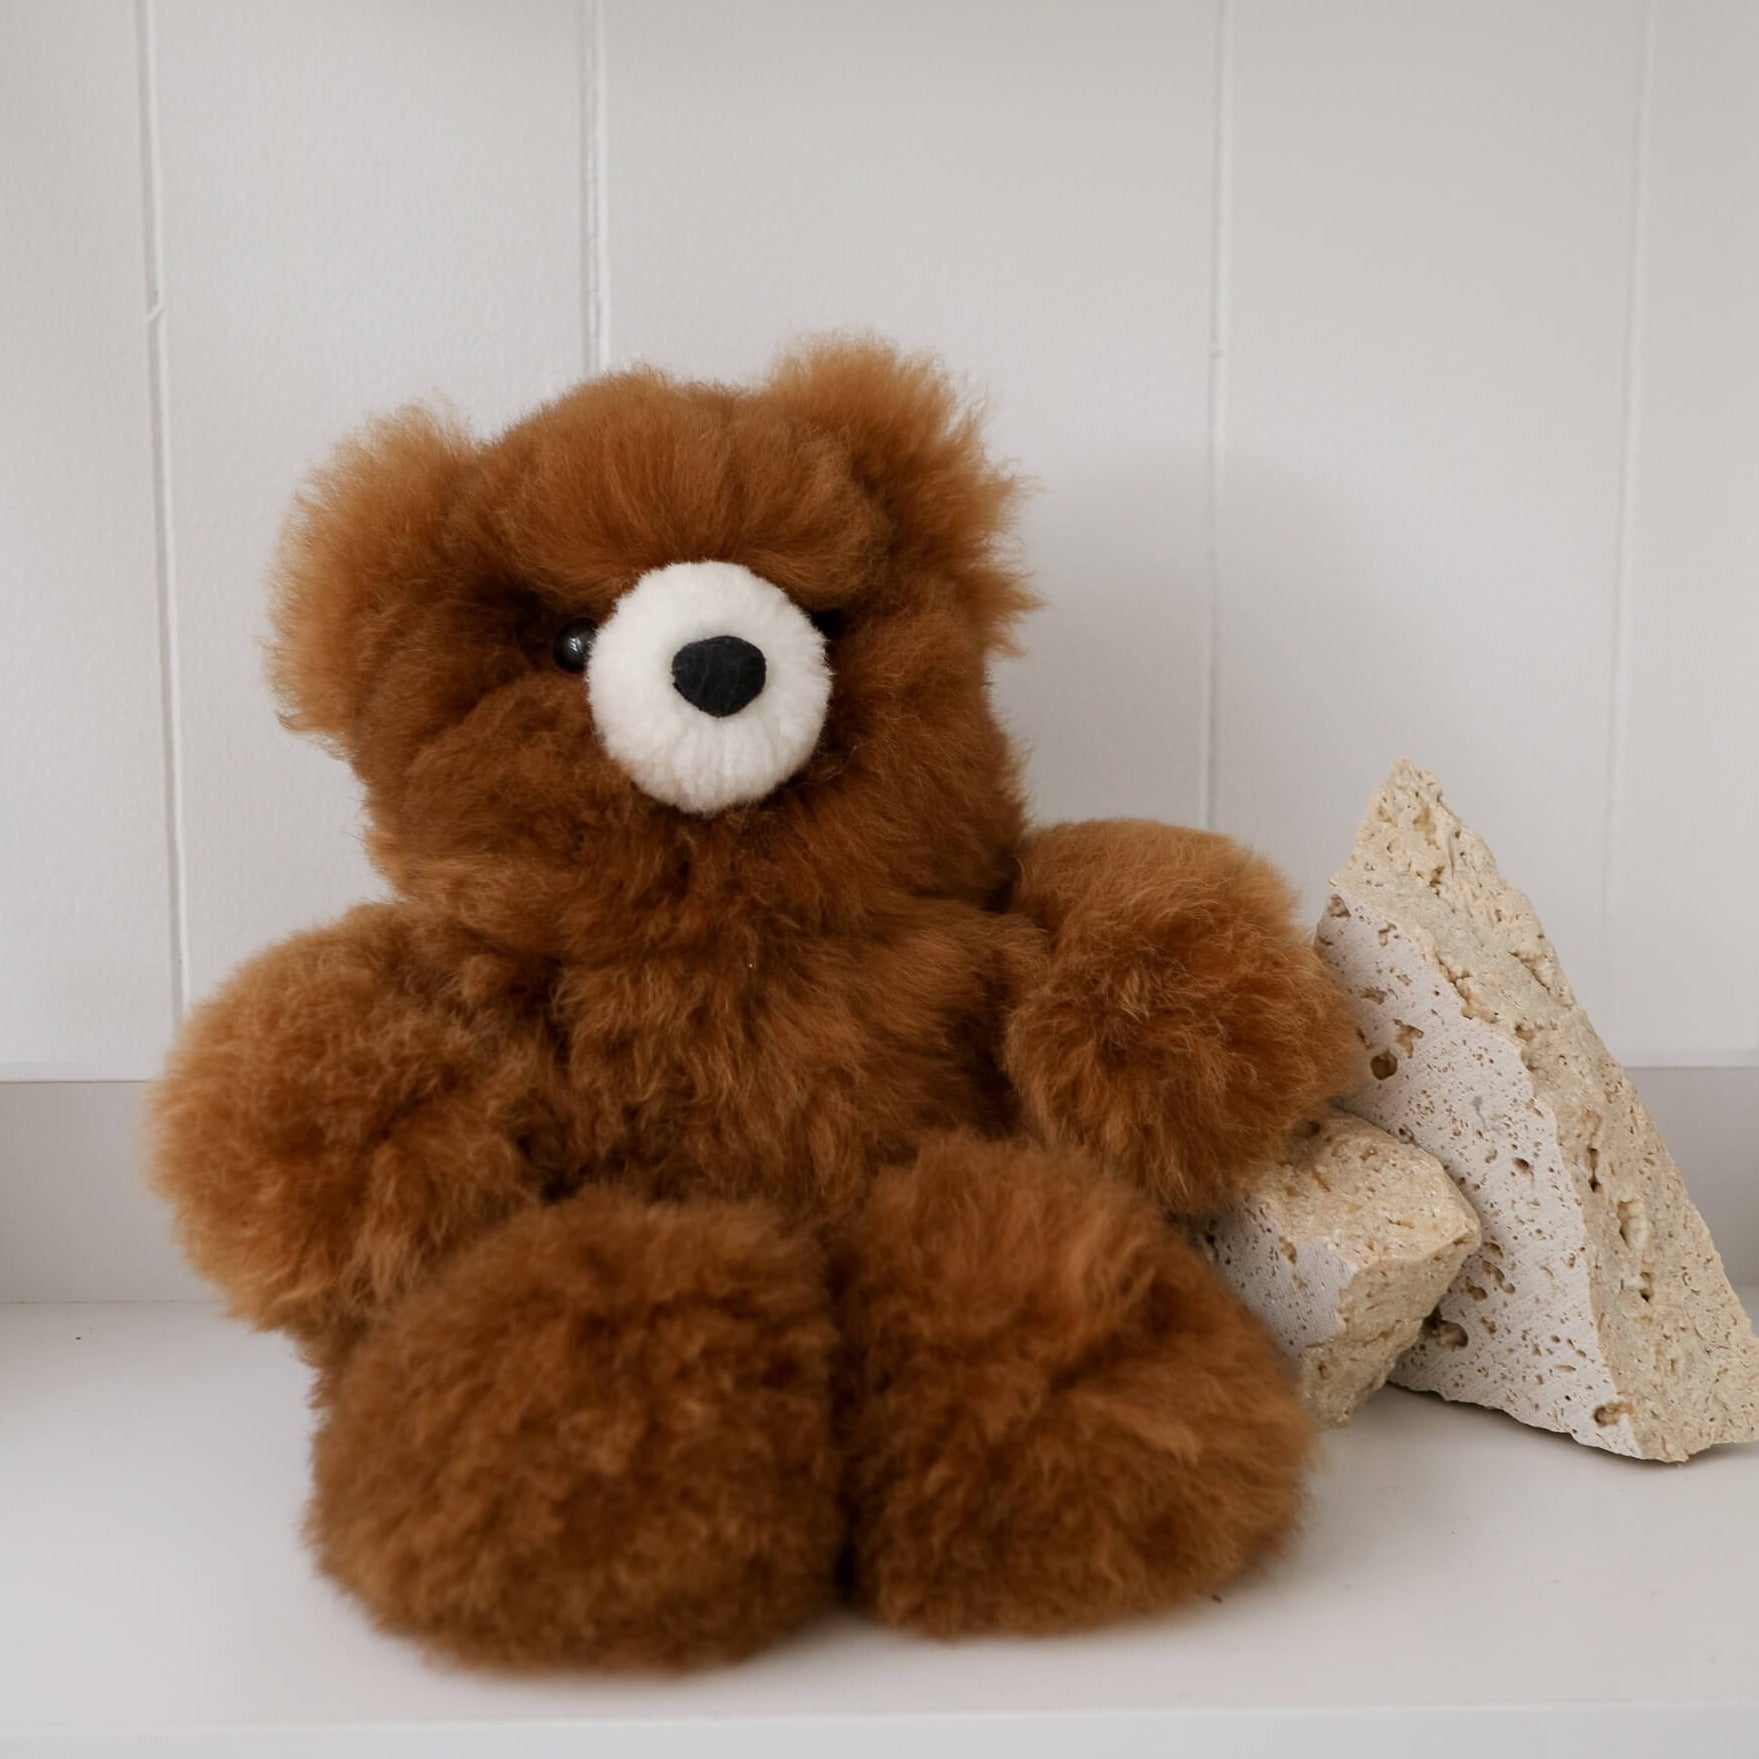 buy teddy bears australia#colour_brown